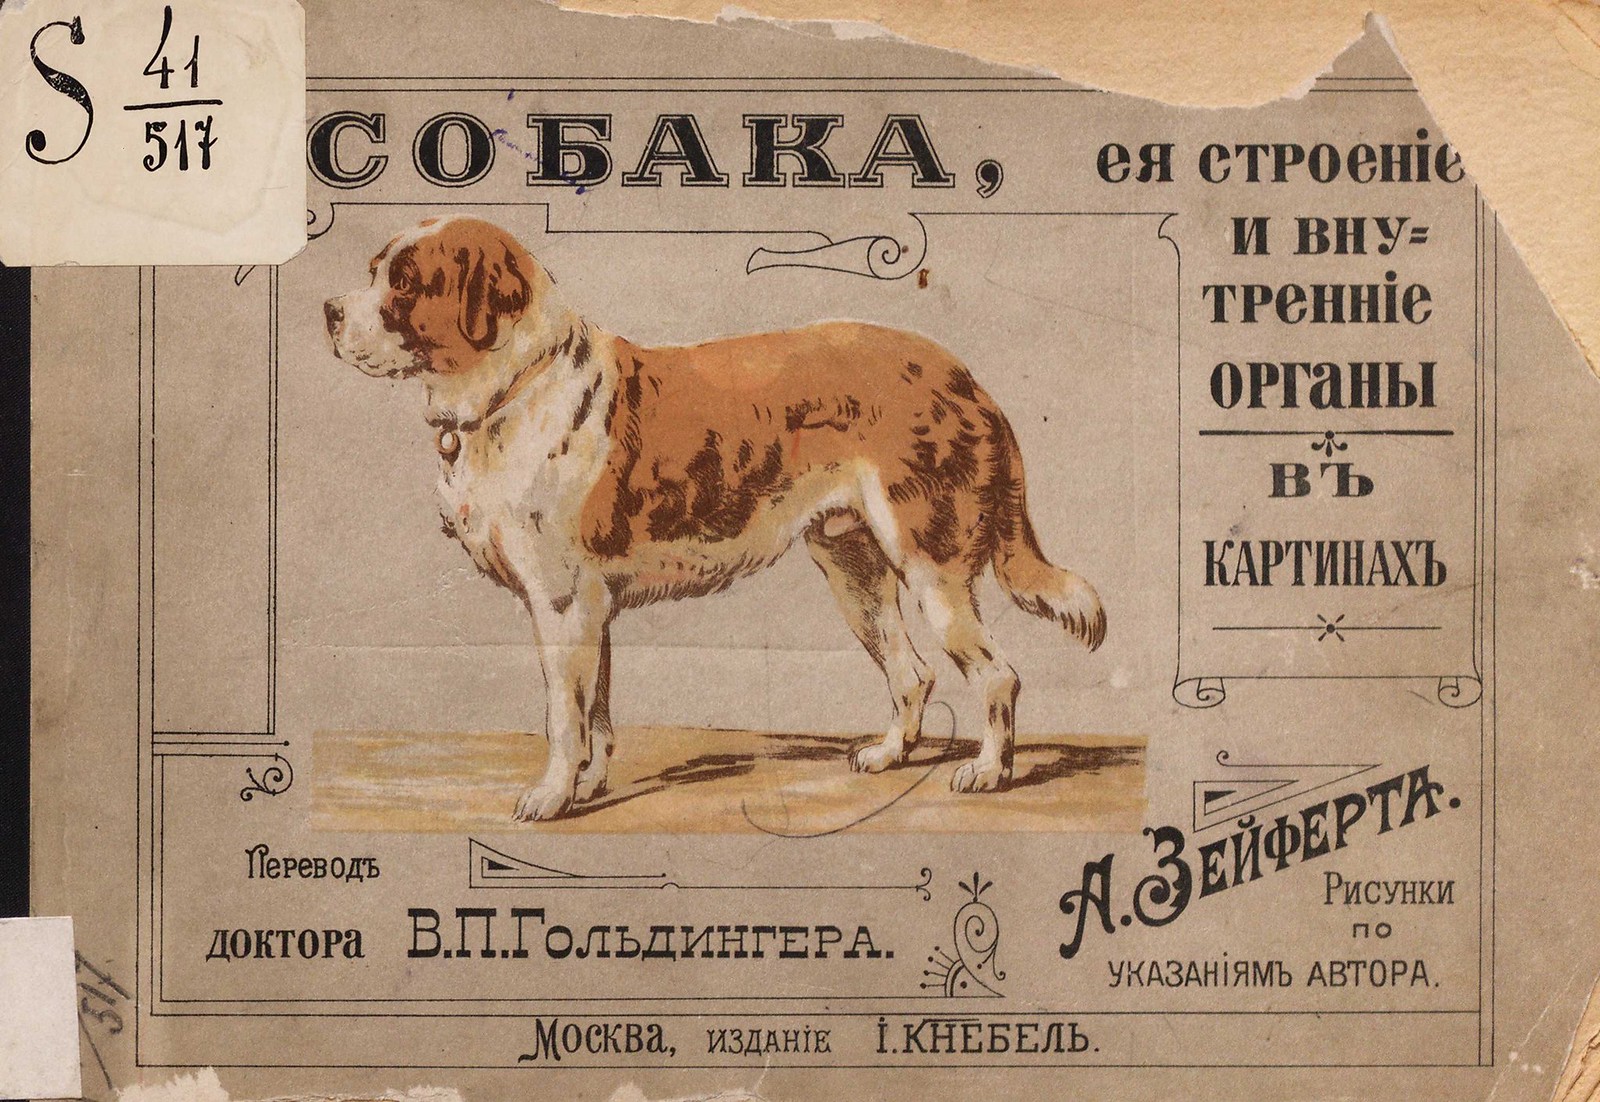 1900. Собака, ее строение и внутренние органы в картинах, с кратким текстом А. Page_00001